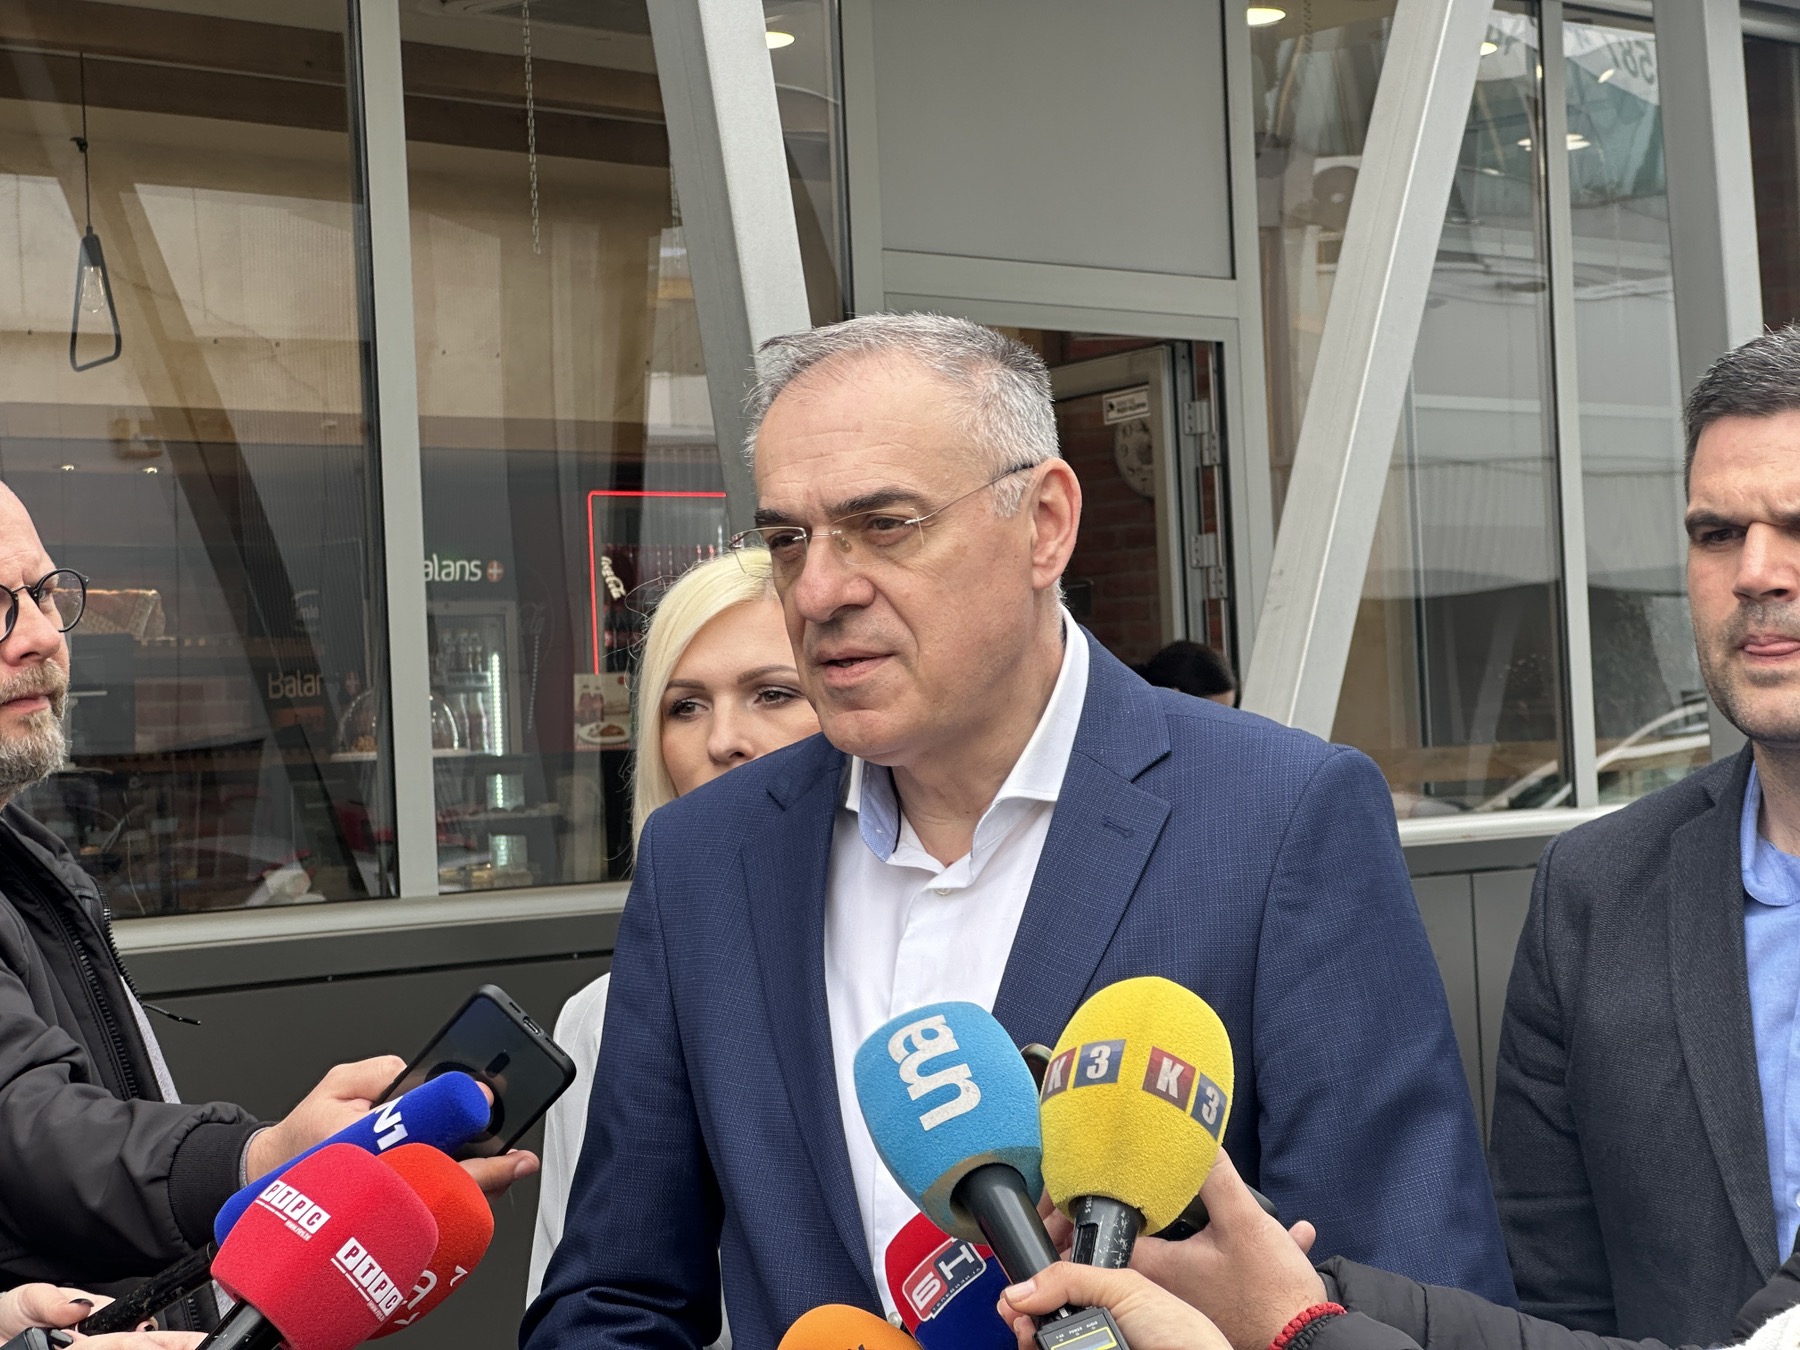 “Cilj je zajednički nastup na izborima” Miličević poručio da se nastavljaju razgovori sa opozicionim strankama